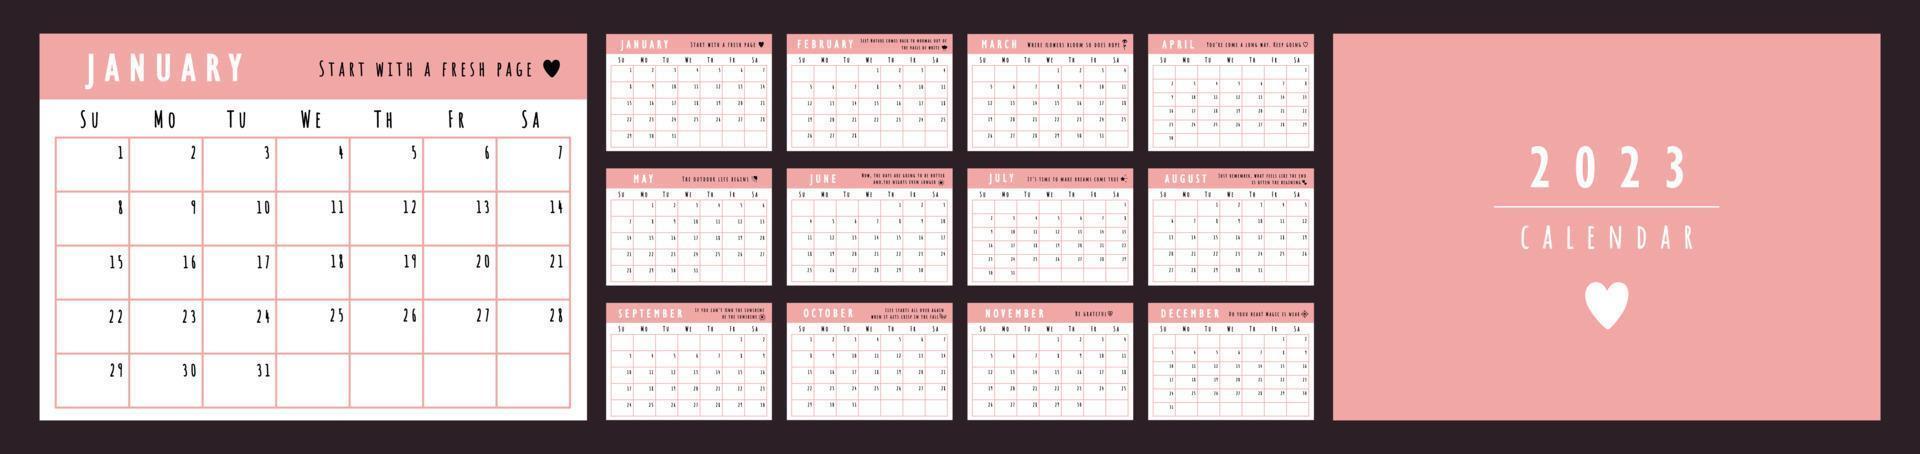 2023 calendario progettista modello con citazioni. il settimana inizia su domenica. rosa parete carino calendario. impostato di 12 mesi vettore